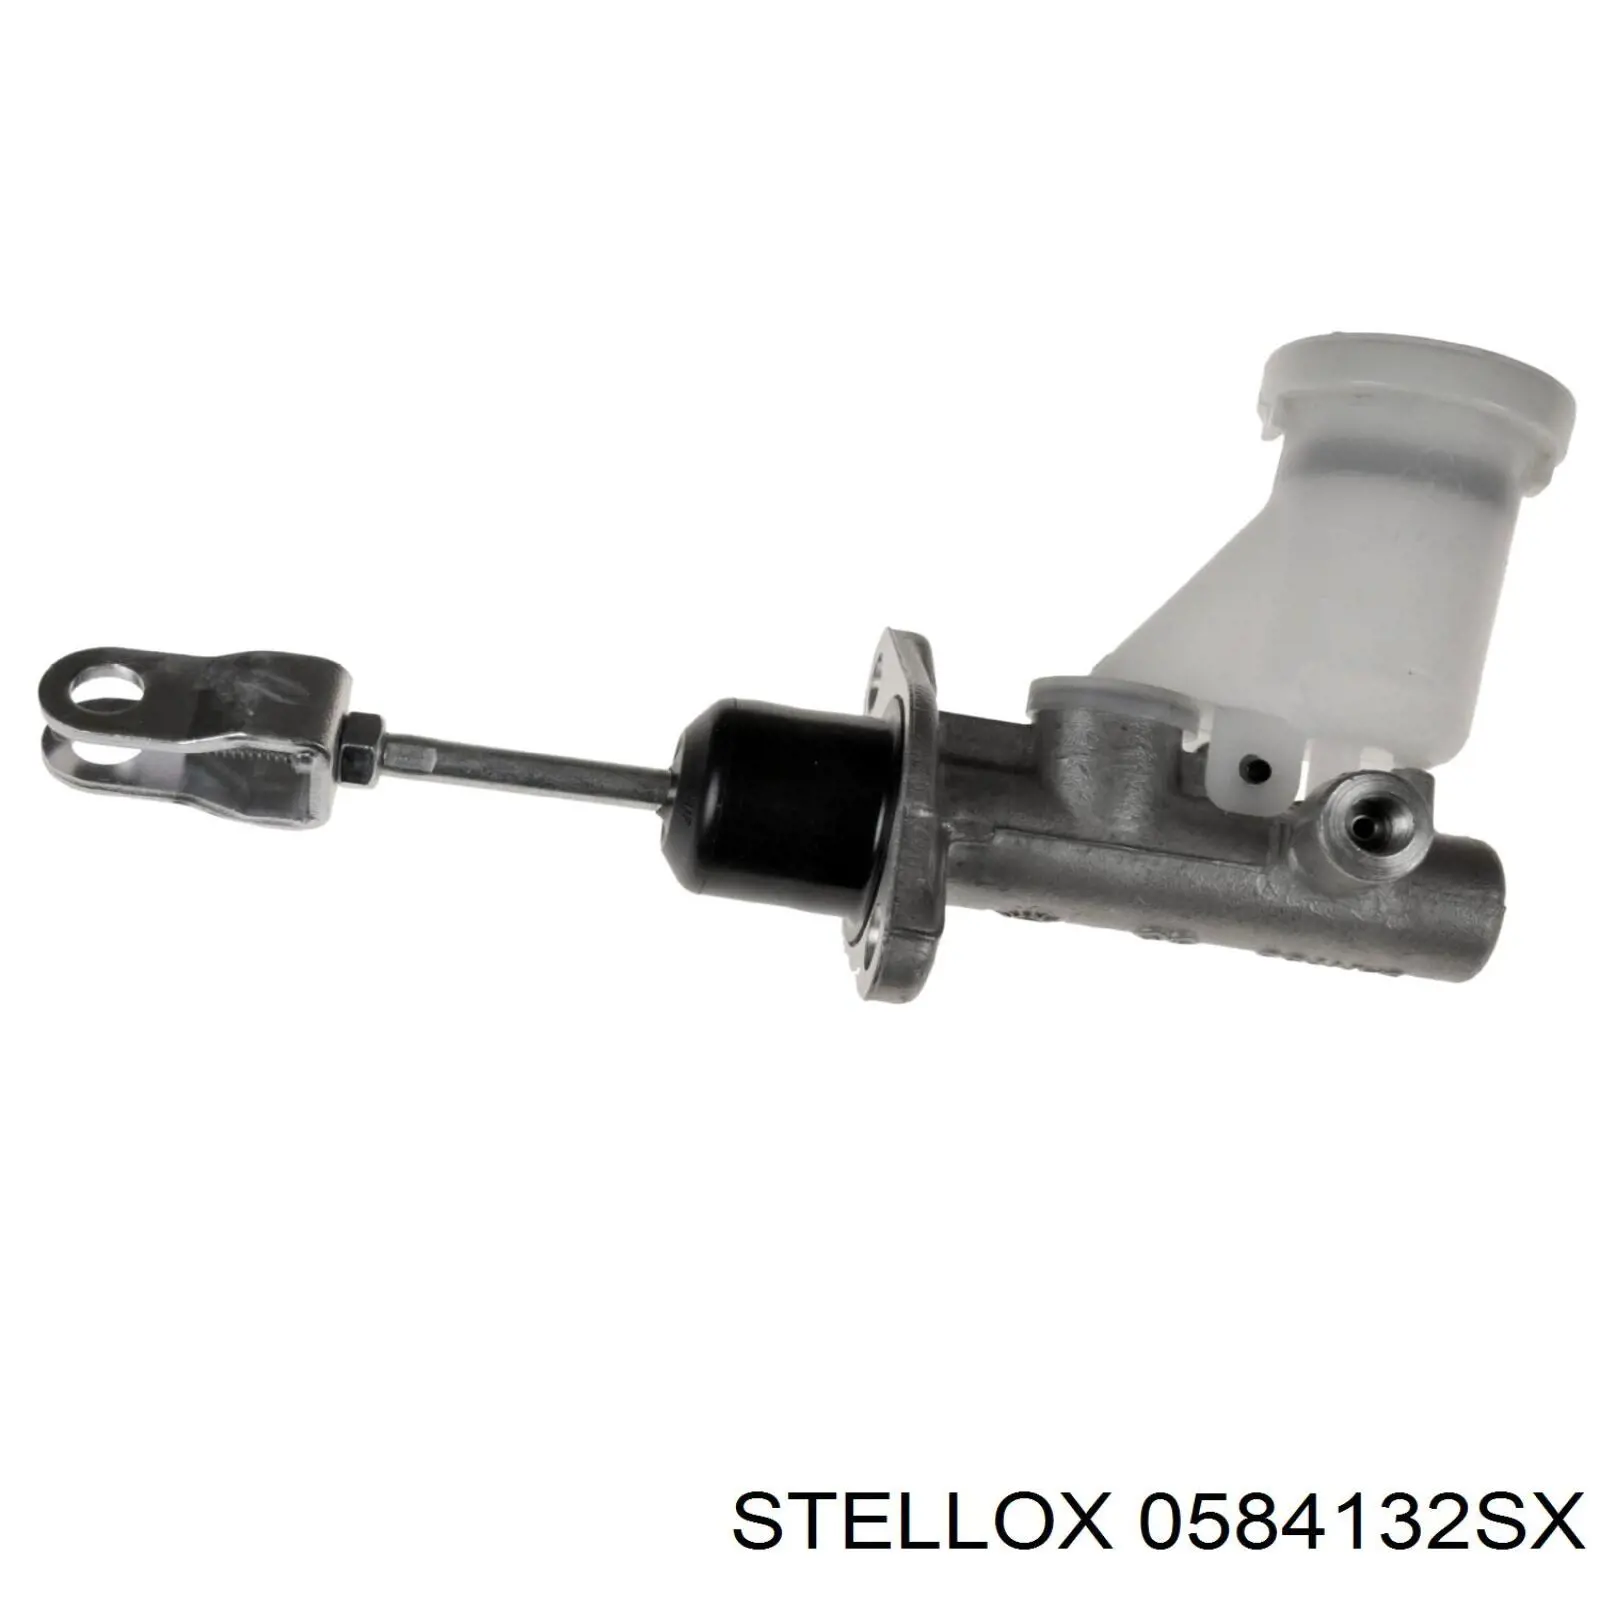 0584132SX Stellox cilindro maestro de embrague